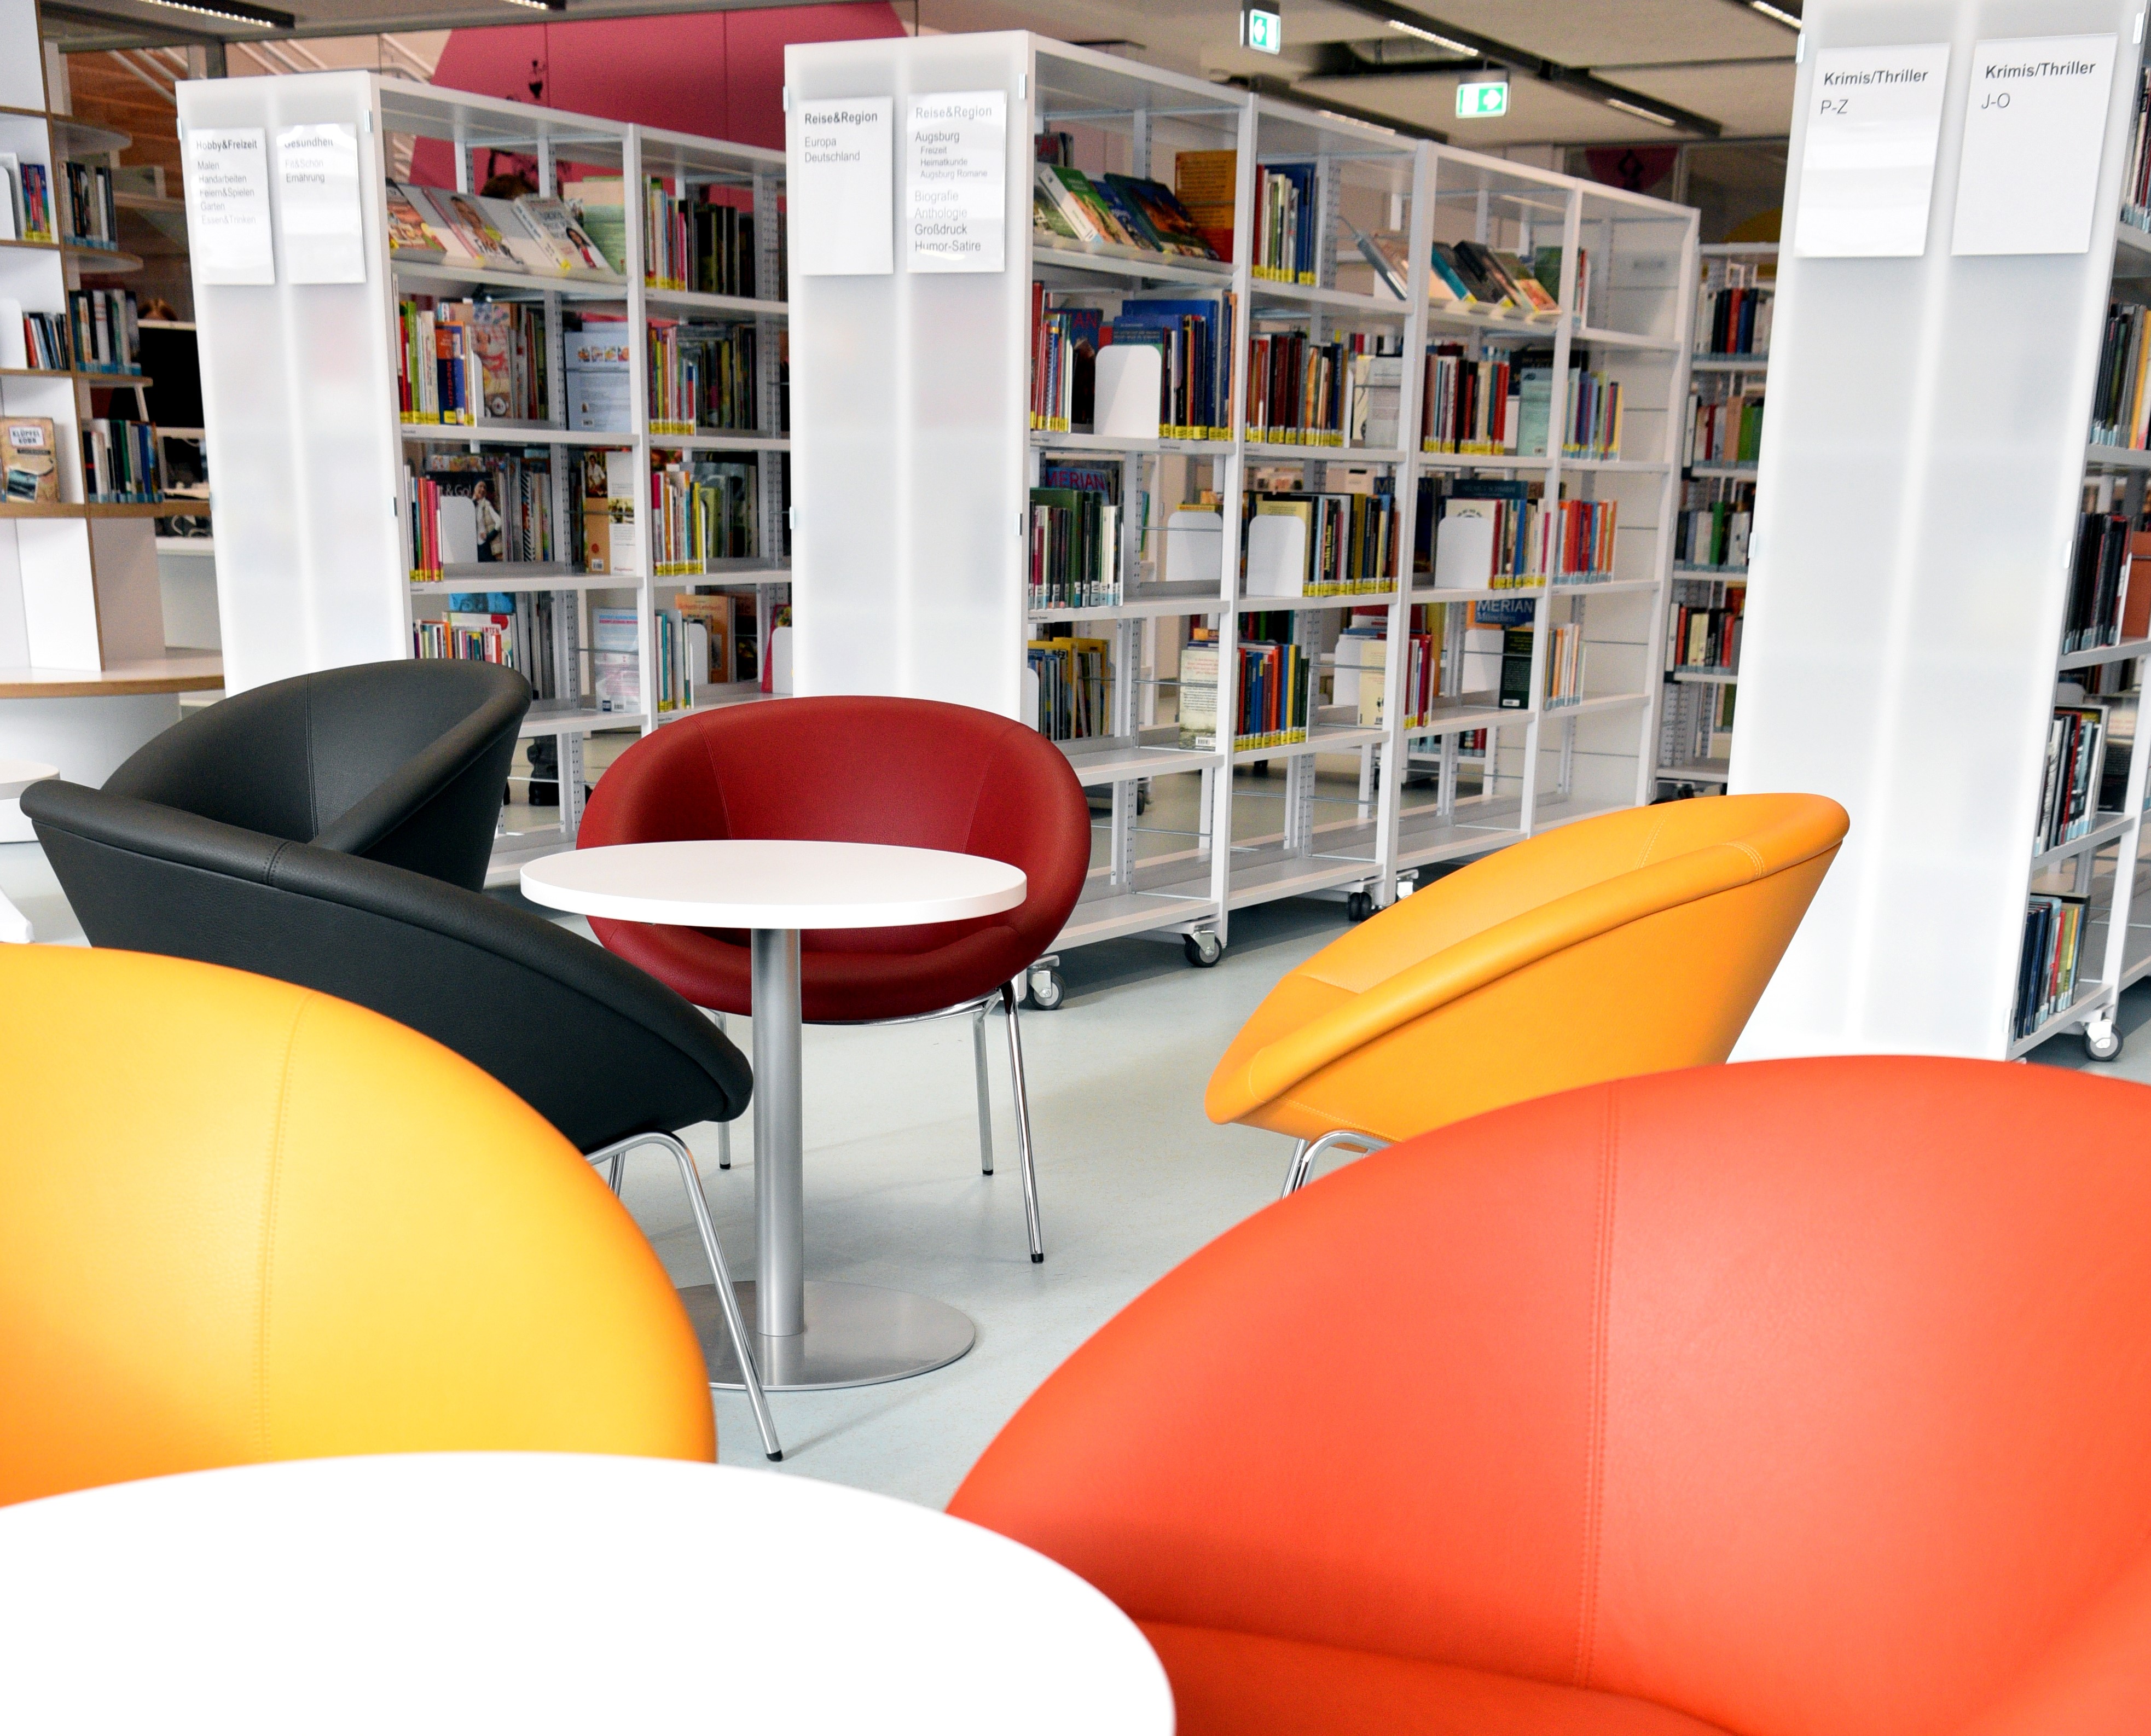 Die Stadtteilbücherei Lechhausen von innen: bunte Stühle stehen an einem Tisch im Vordergrund. Hinten sind mehrere Bücherregale zu sehen.